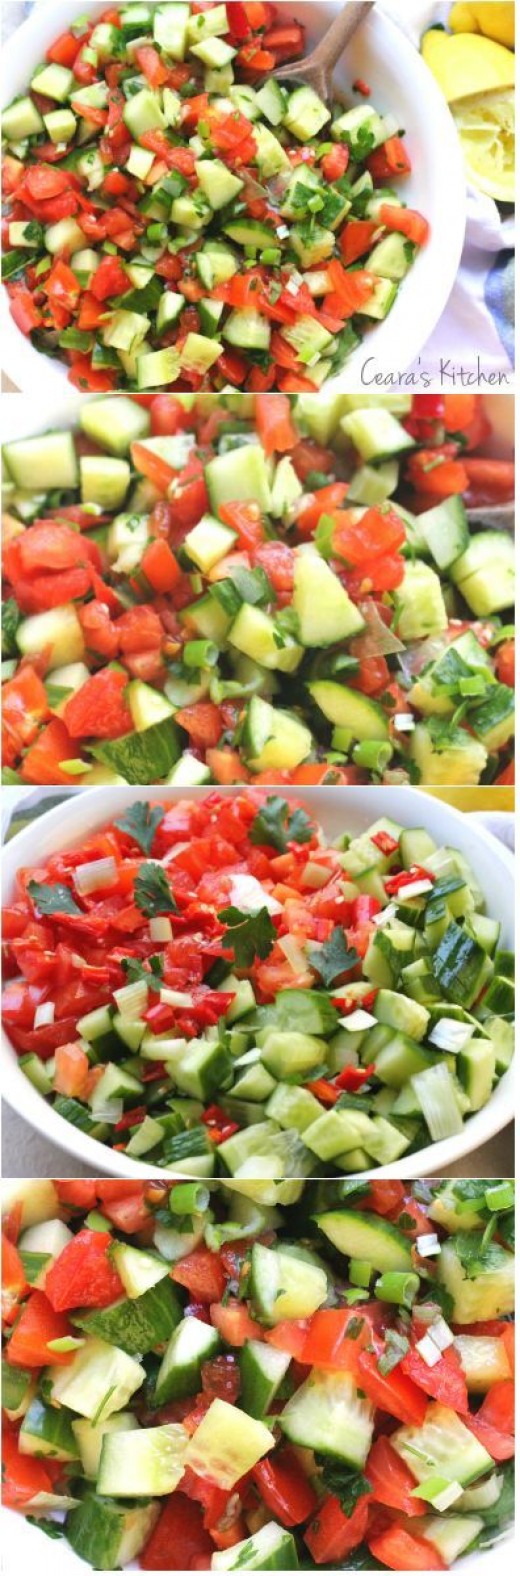 Green-salad-recipes